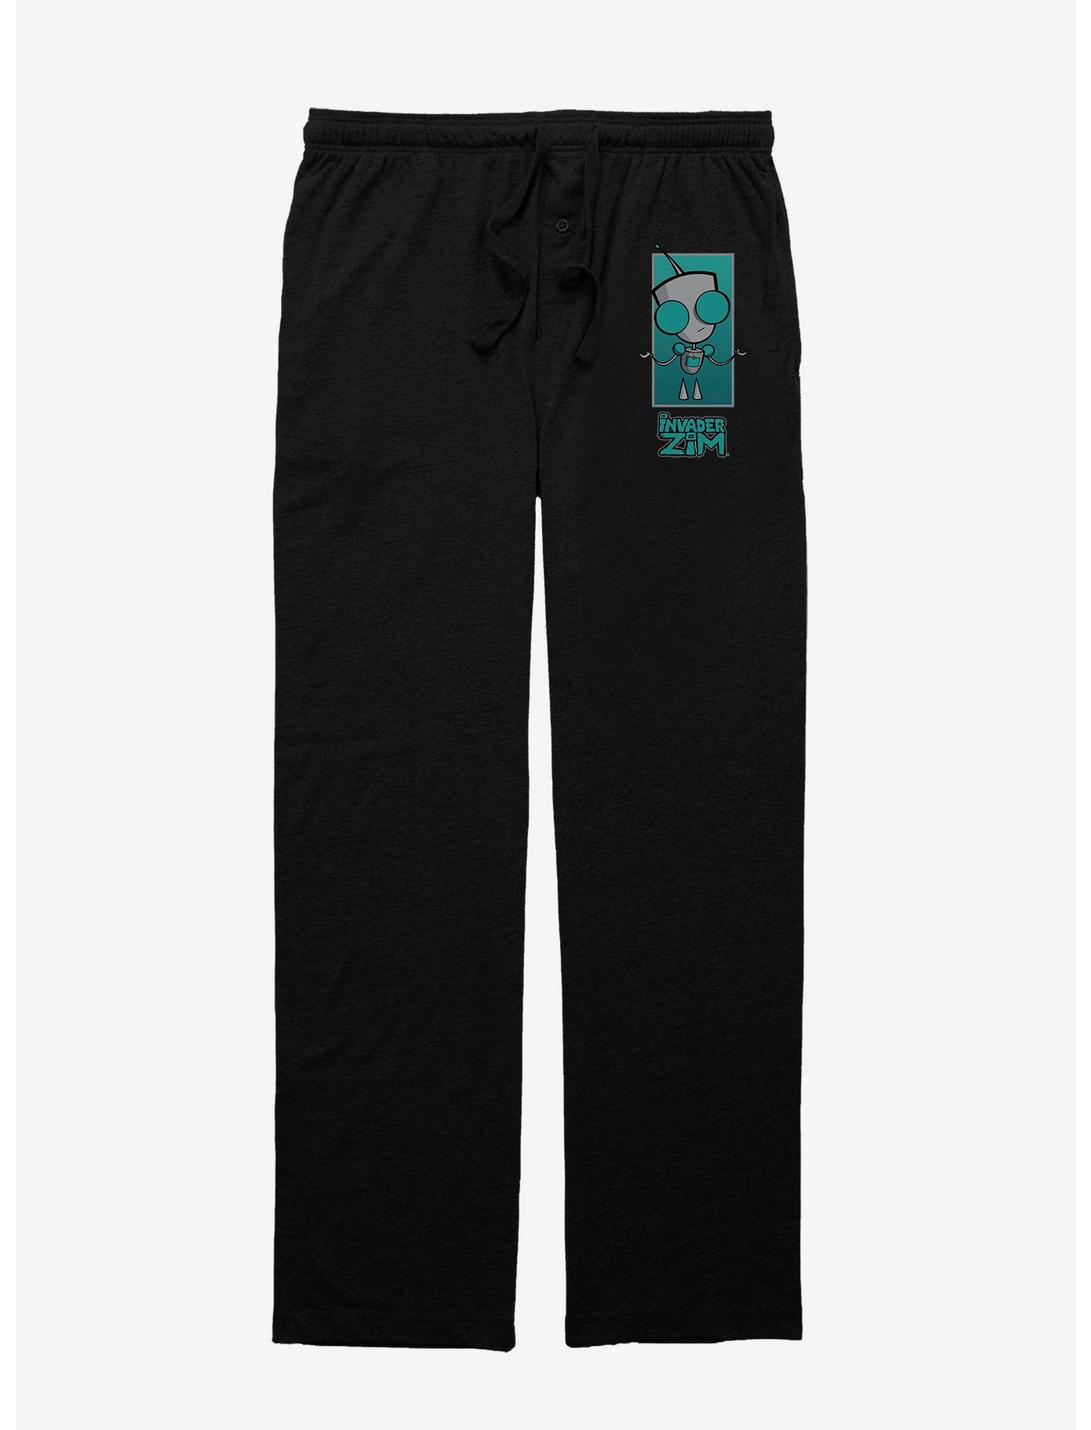 Invader Zim GIR Pajama Pants, BLACK, hi-res